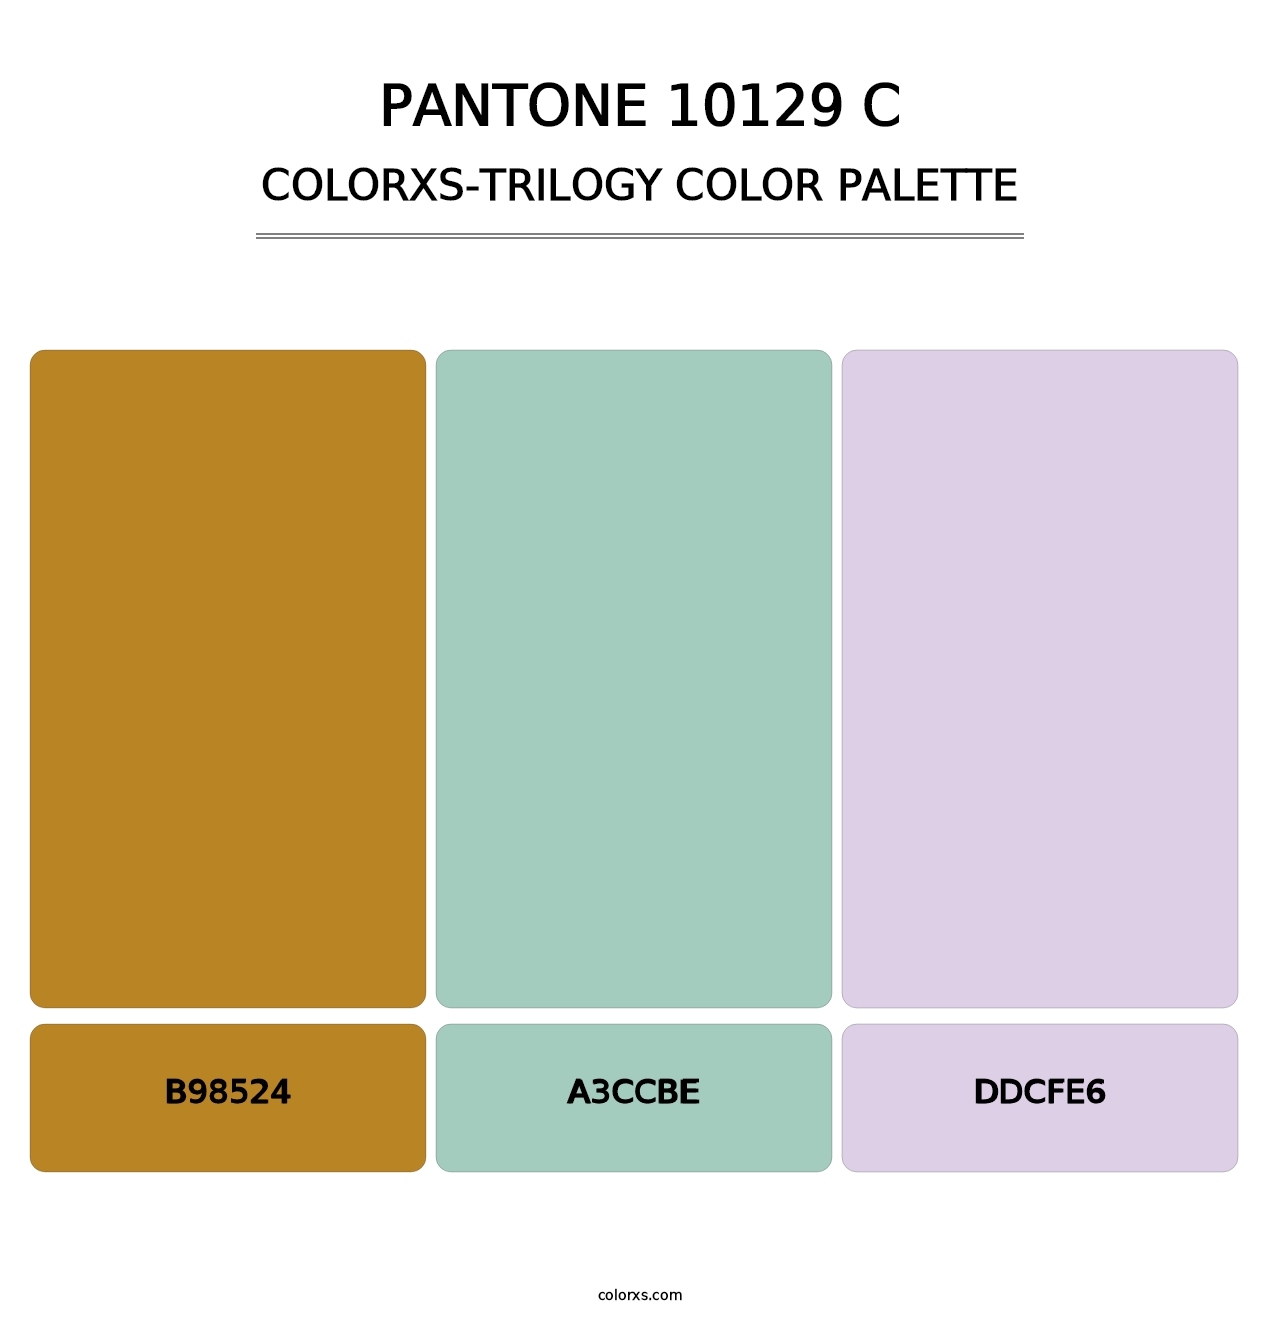 PANTONE 10129 C - Colorxs Trilogy Palette